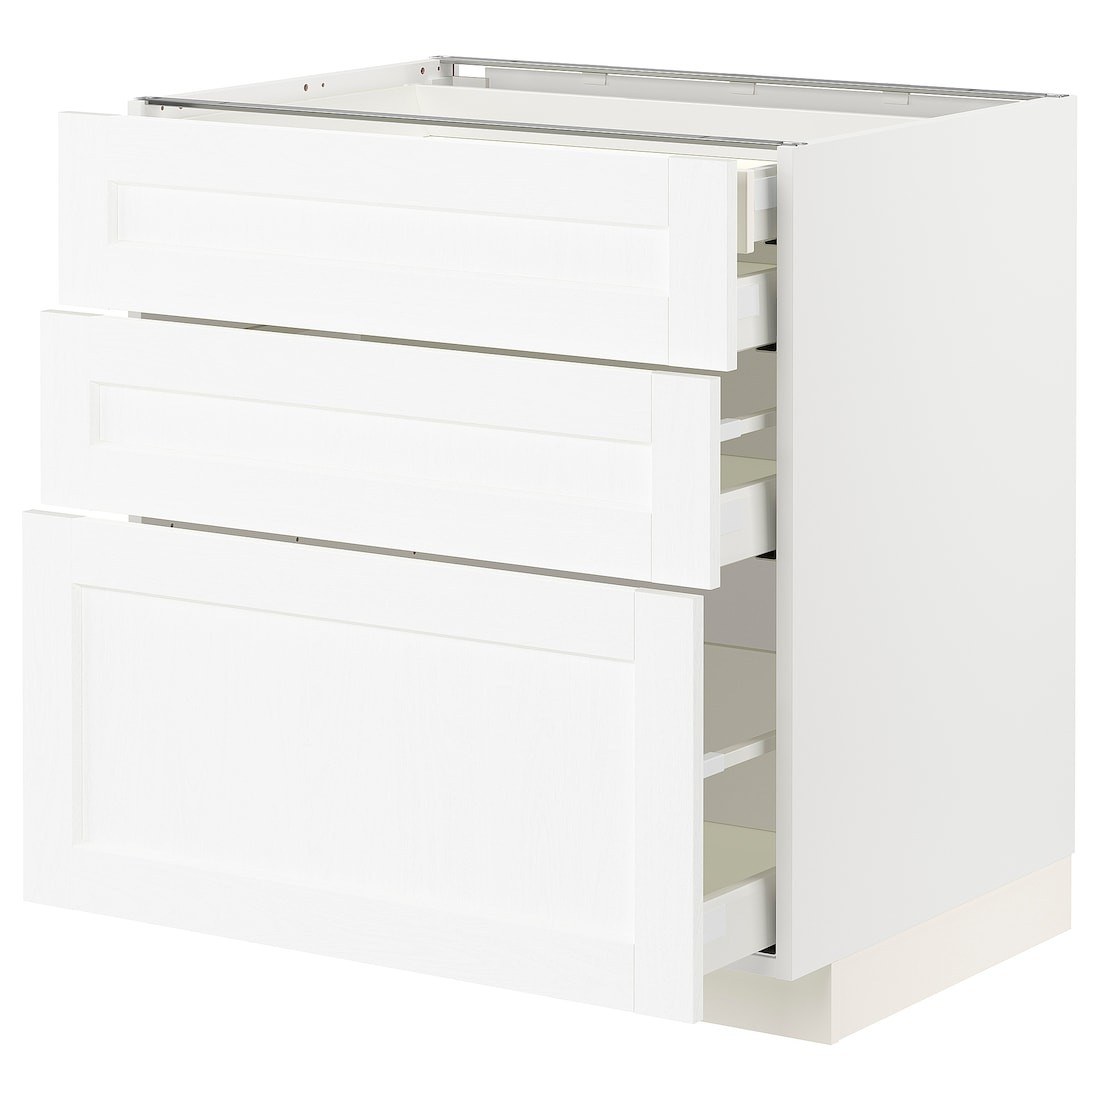 IKEA METOD МЕТОД / MAXIMERA МАКСИМЕРА Напольный шкаф с ящиками, белый Enköping / белый имитация дерева, 80x60 см 49473390 494.733.90